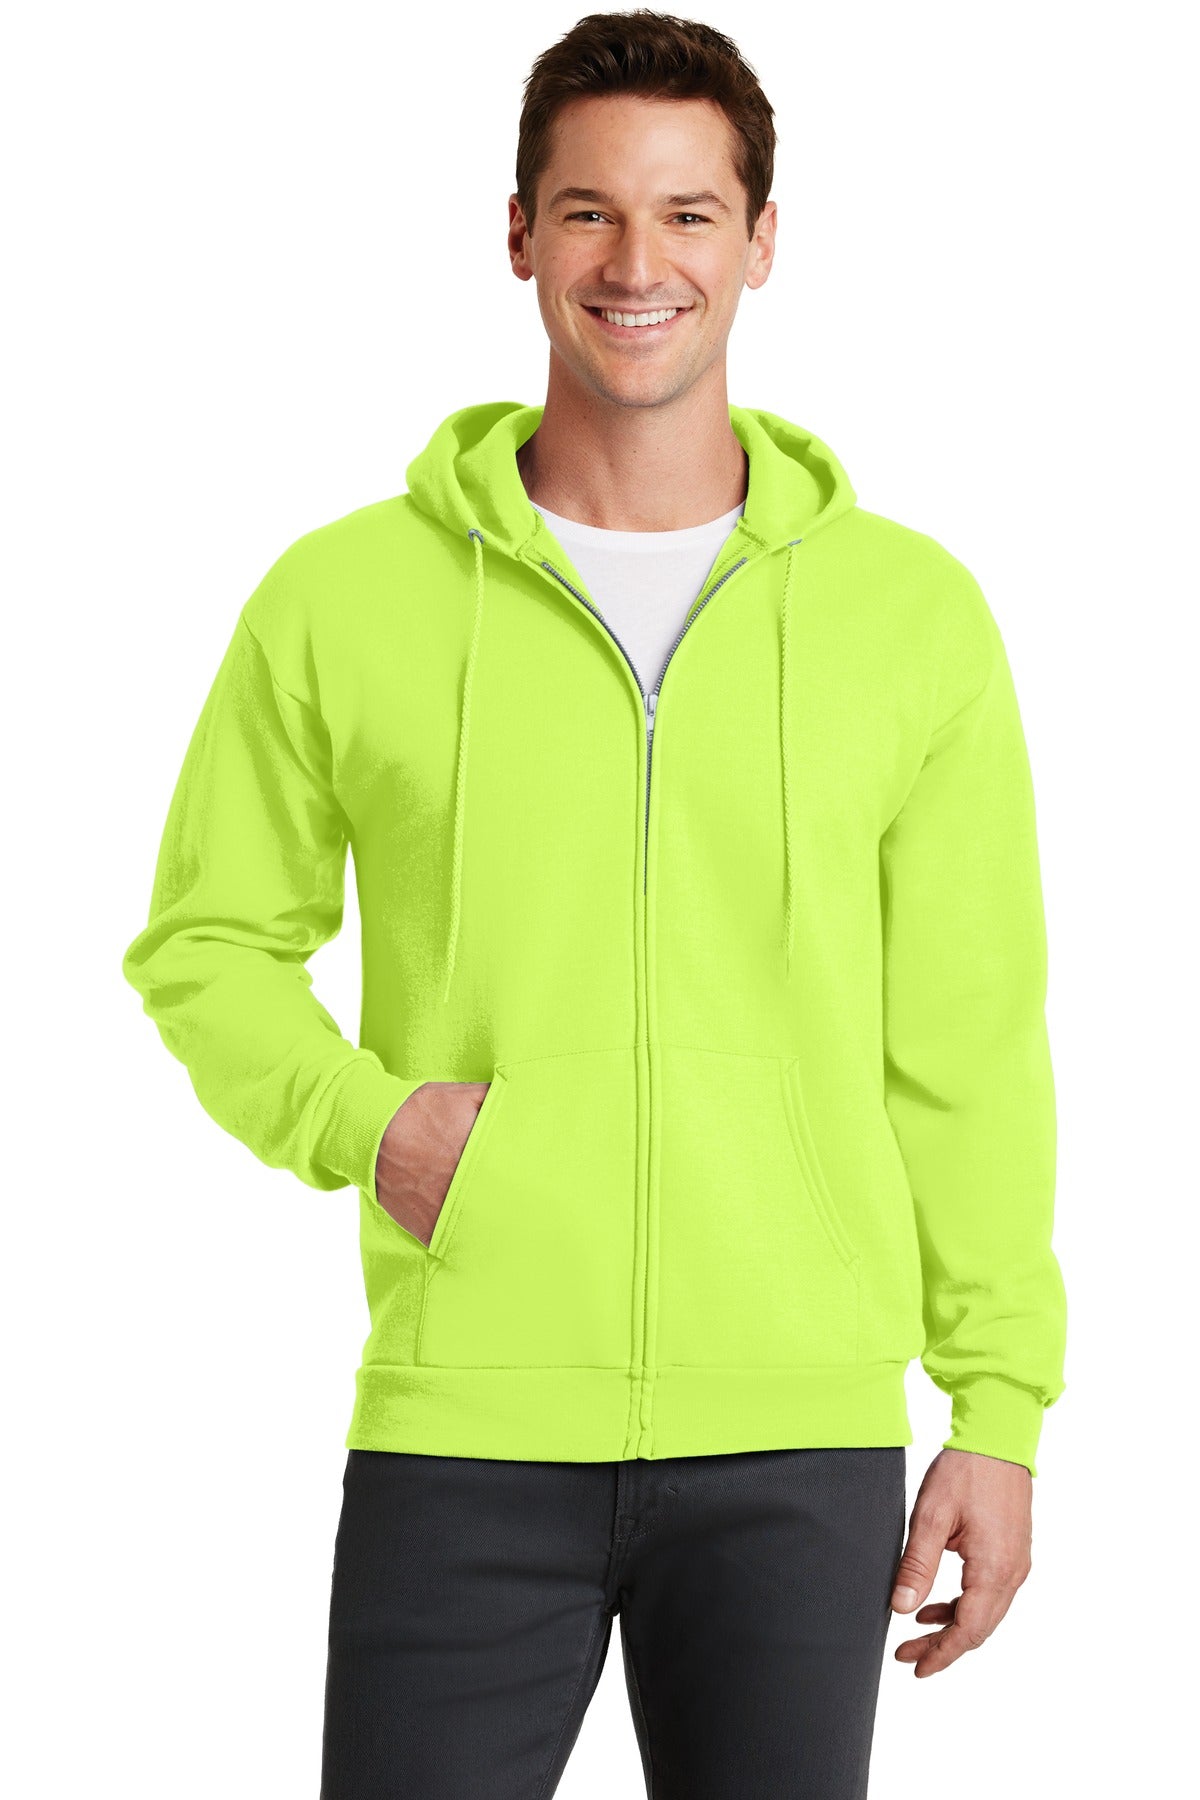 Sweatshirts/Fleece Neon Yellow Port & Company